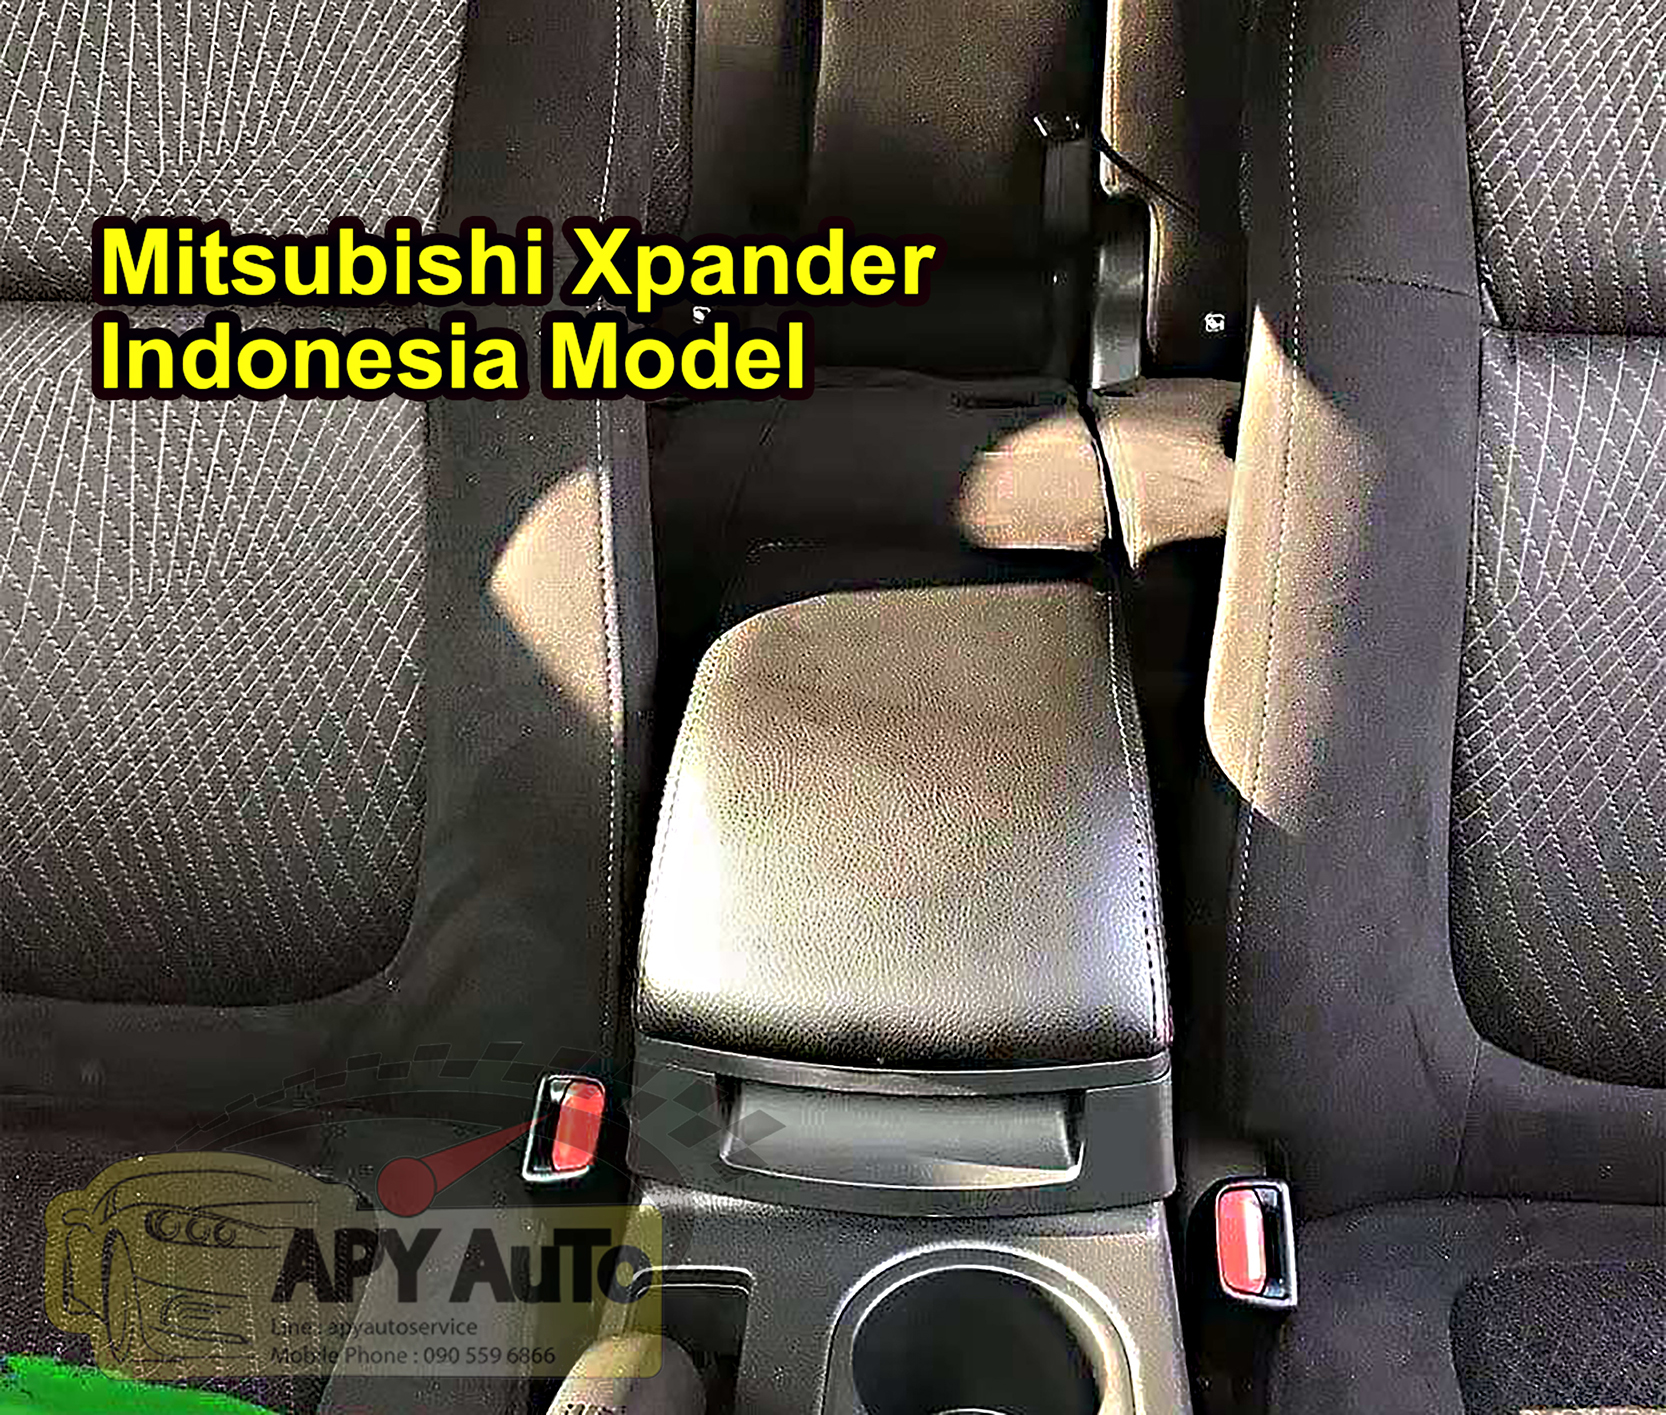 ที่พักแขน Mitsubishi Xpander แบบไม่บังที่วางแก้ว  โมเดลของประเทศอินโดนีเซีย  มีที่ใส่กล่องกระดาษทิชชู๋